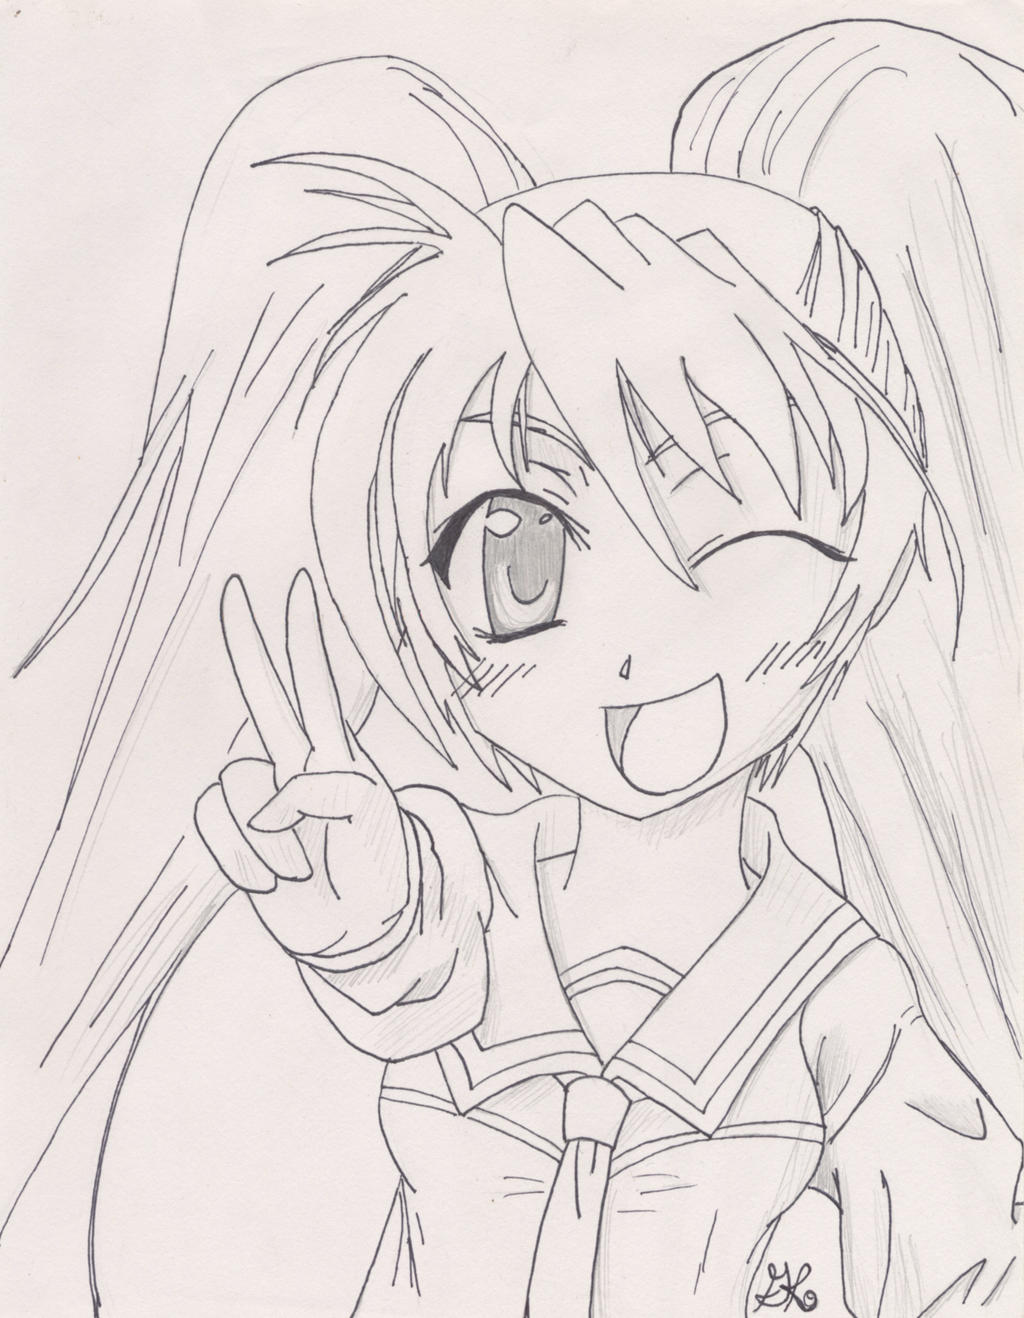 Anime peace sign by ninjakittyartist on DeviantArt